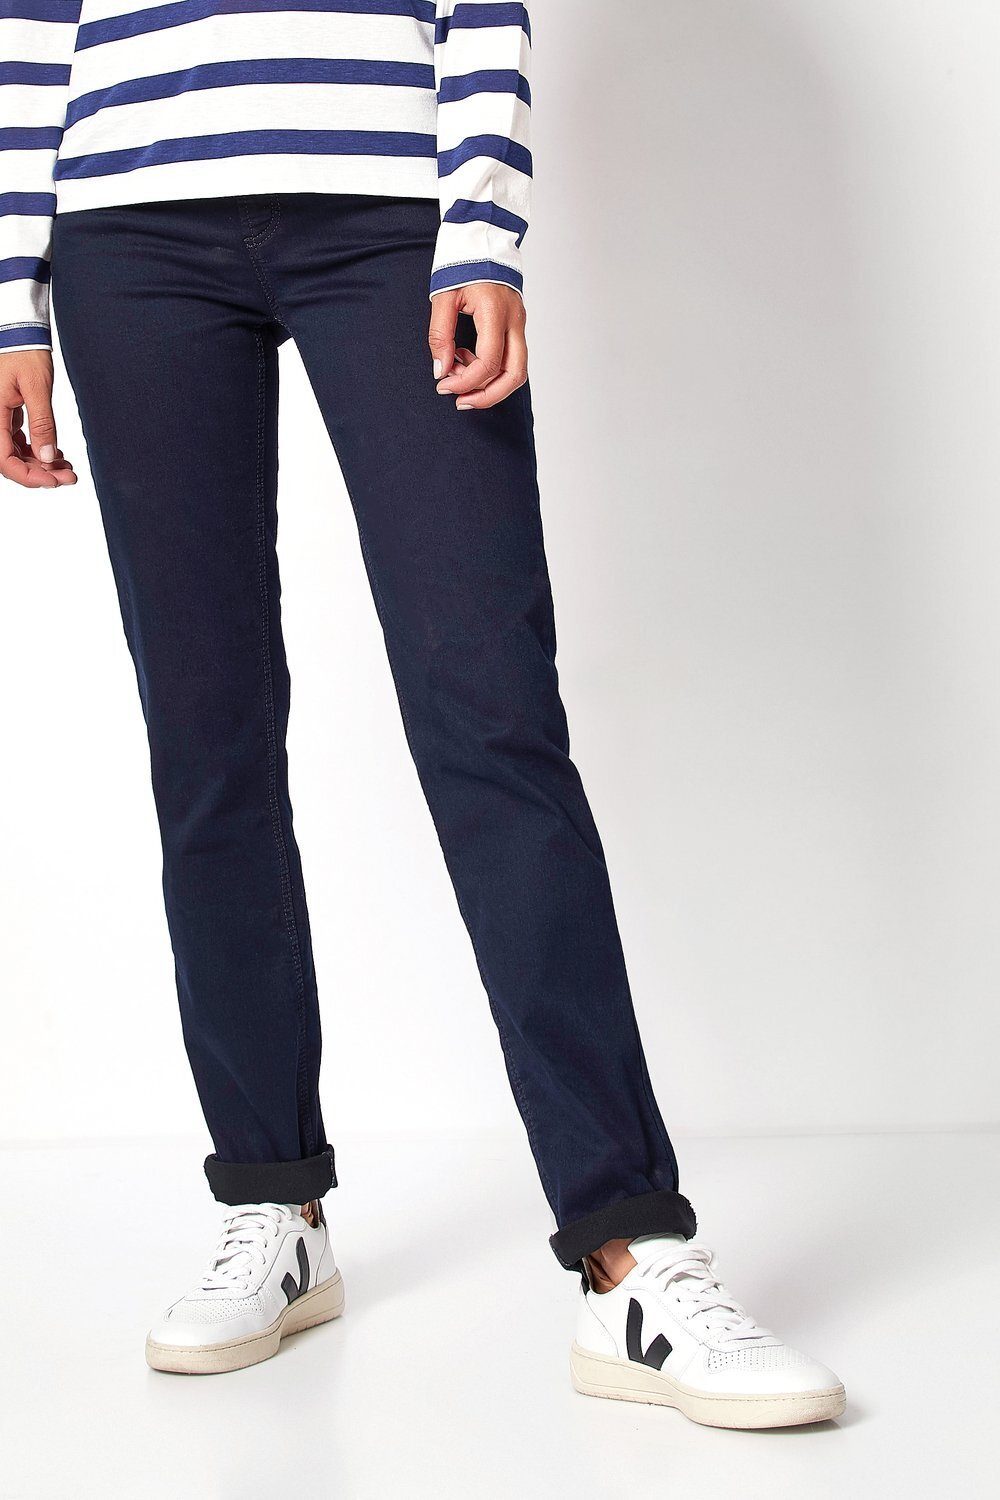 TONI 5-Pocket-Jeans Liv in Regular-Fit dunkelblau - 059